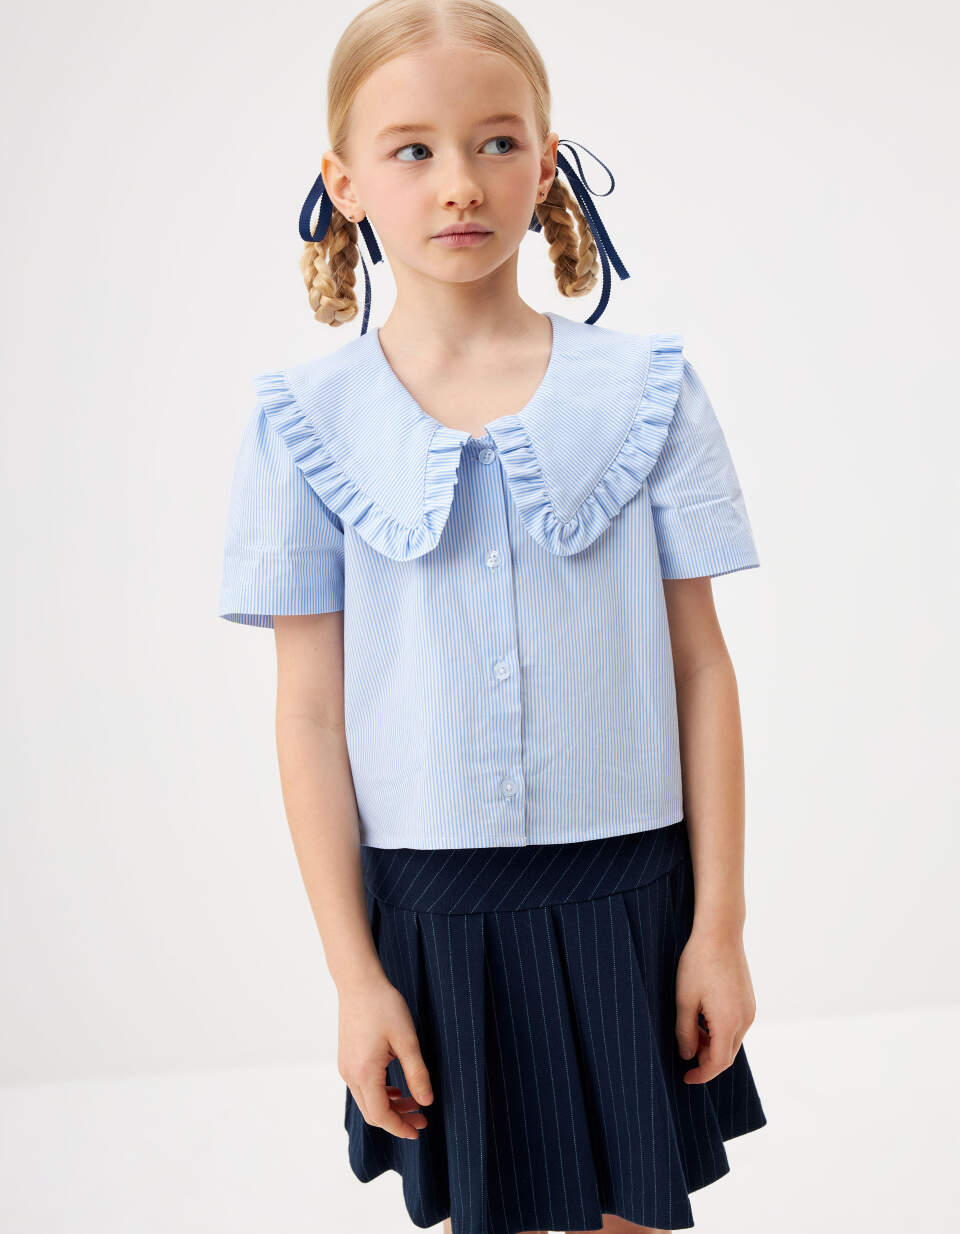 Укороченная блузка с нарядным воротником для девочек